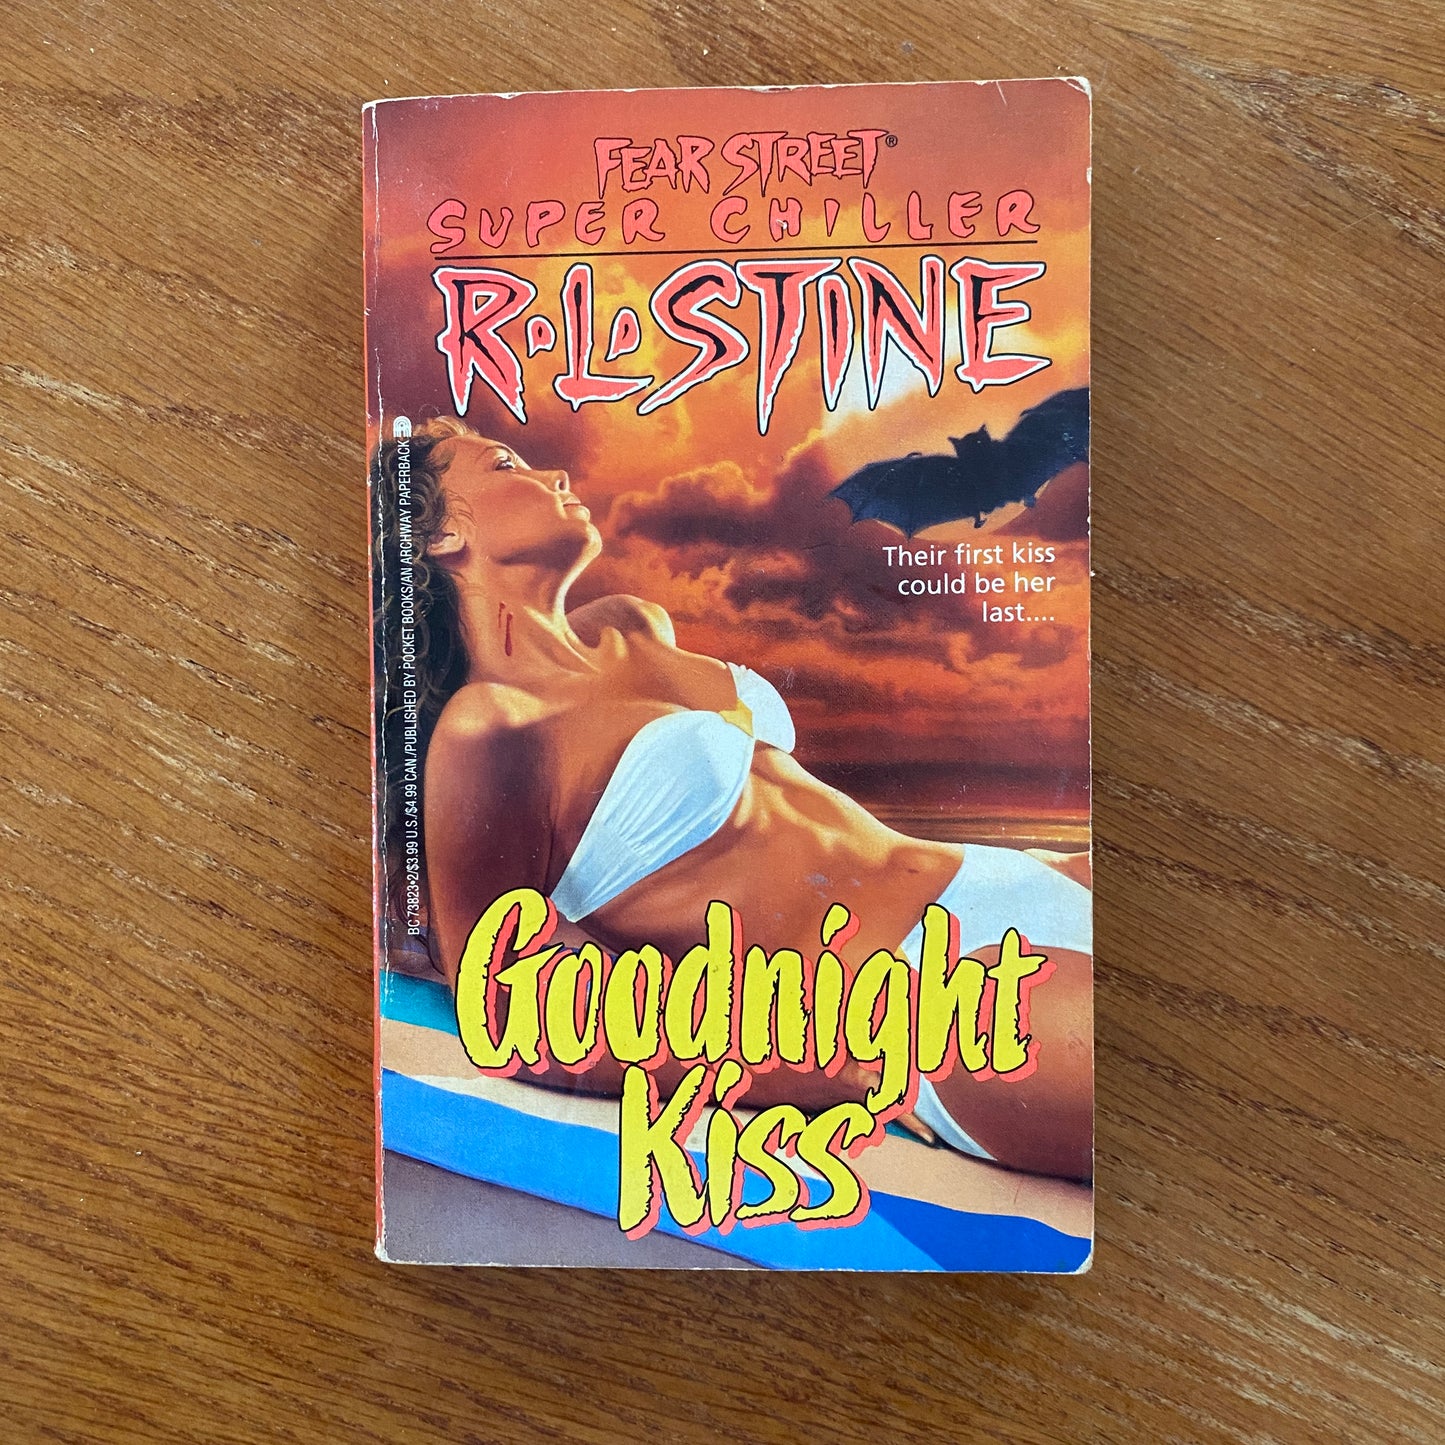 R.L Stine - Fear Street: Goodnight Kiss